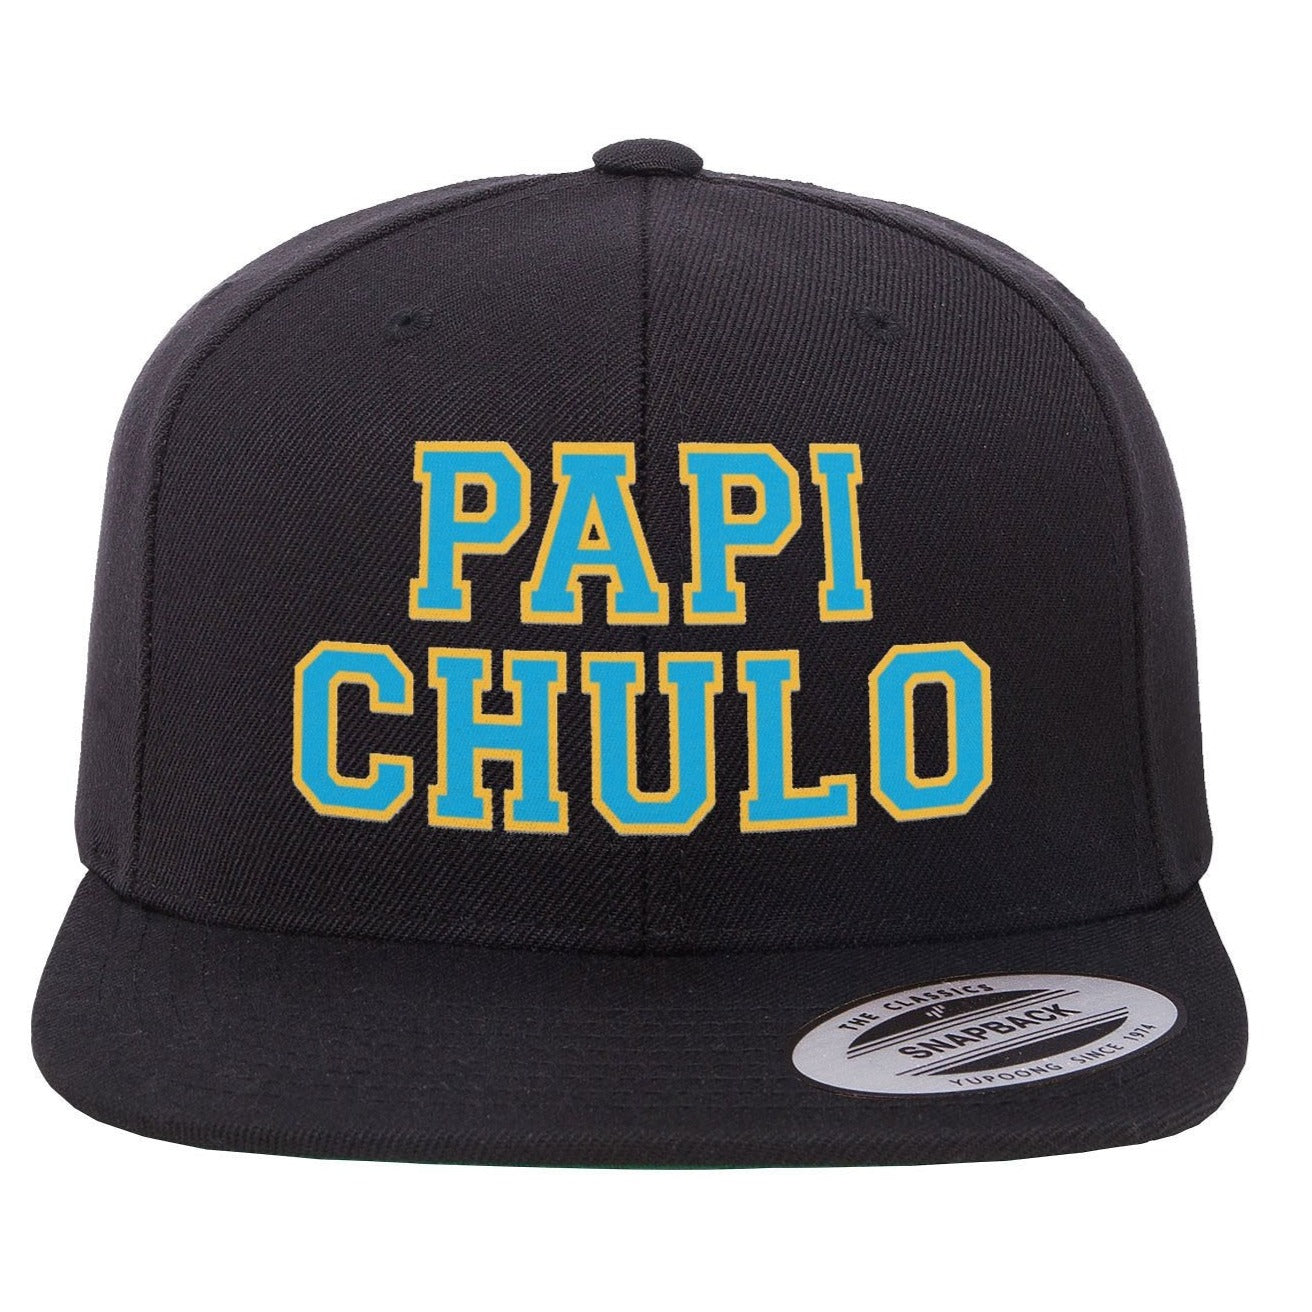 Papi Chulo Flat Bill Hat